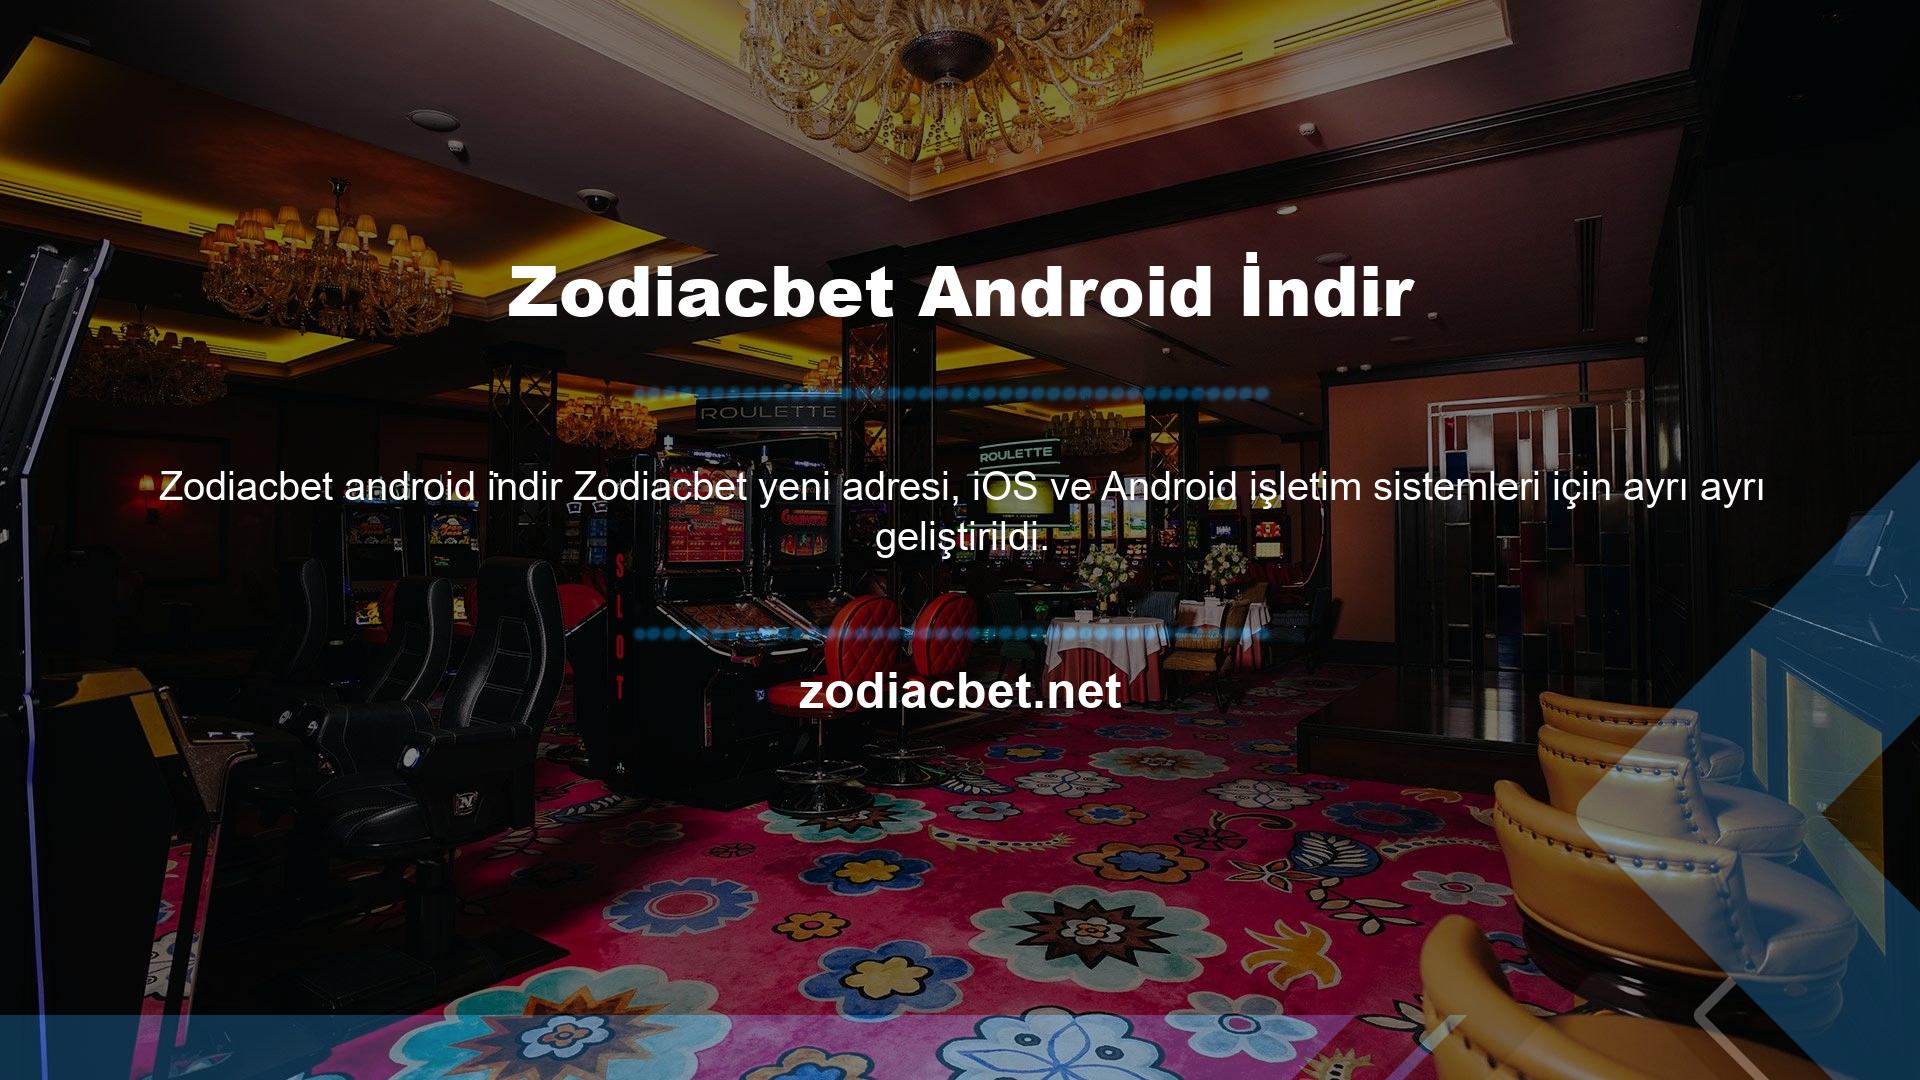 Zodiacbet Andorid indirme seçeneği, web sitesinden mobil cihazınıza içerik indirmenizi sağlar